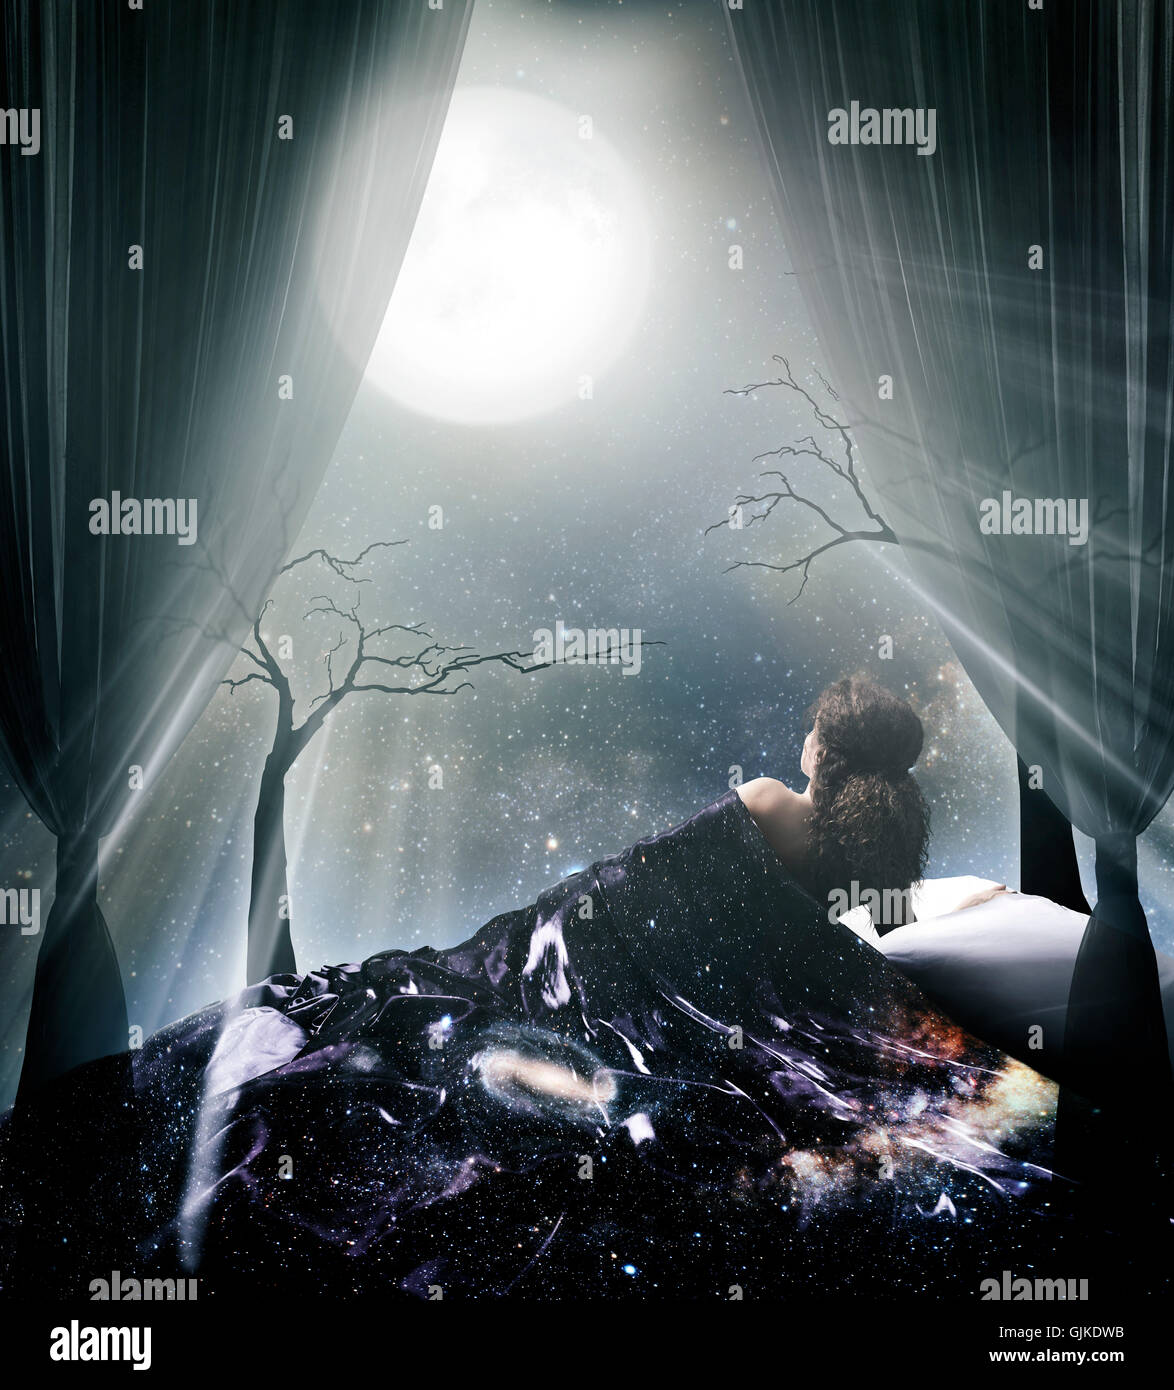 Führerschein verfügbar um MaximImages.com Uhr - beleuchtet von der Mondscheinfrau, die im Bett unter dem Sternenhimmel liegt, und dem künstlerischen, spirituellen Vollmond-Foto Stockfoto